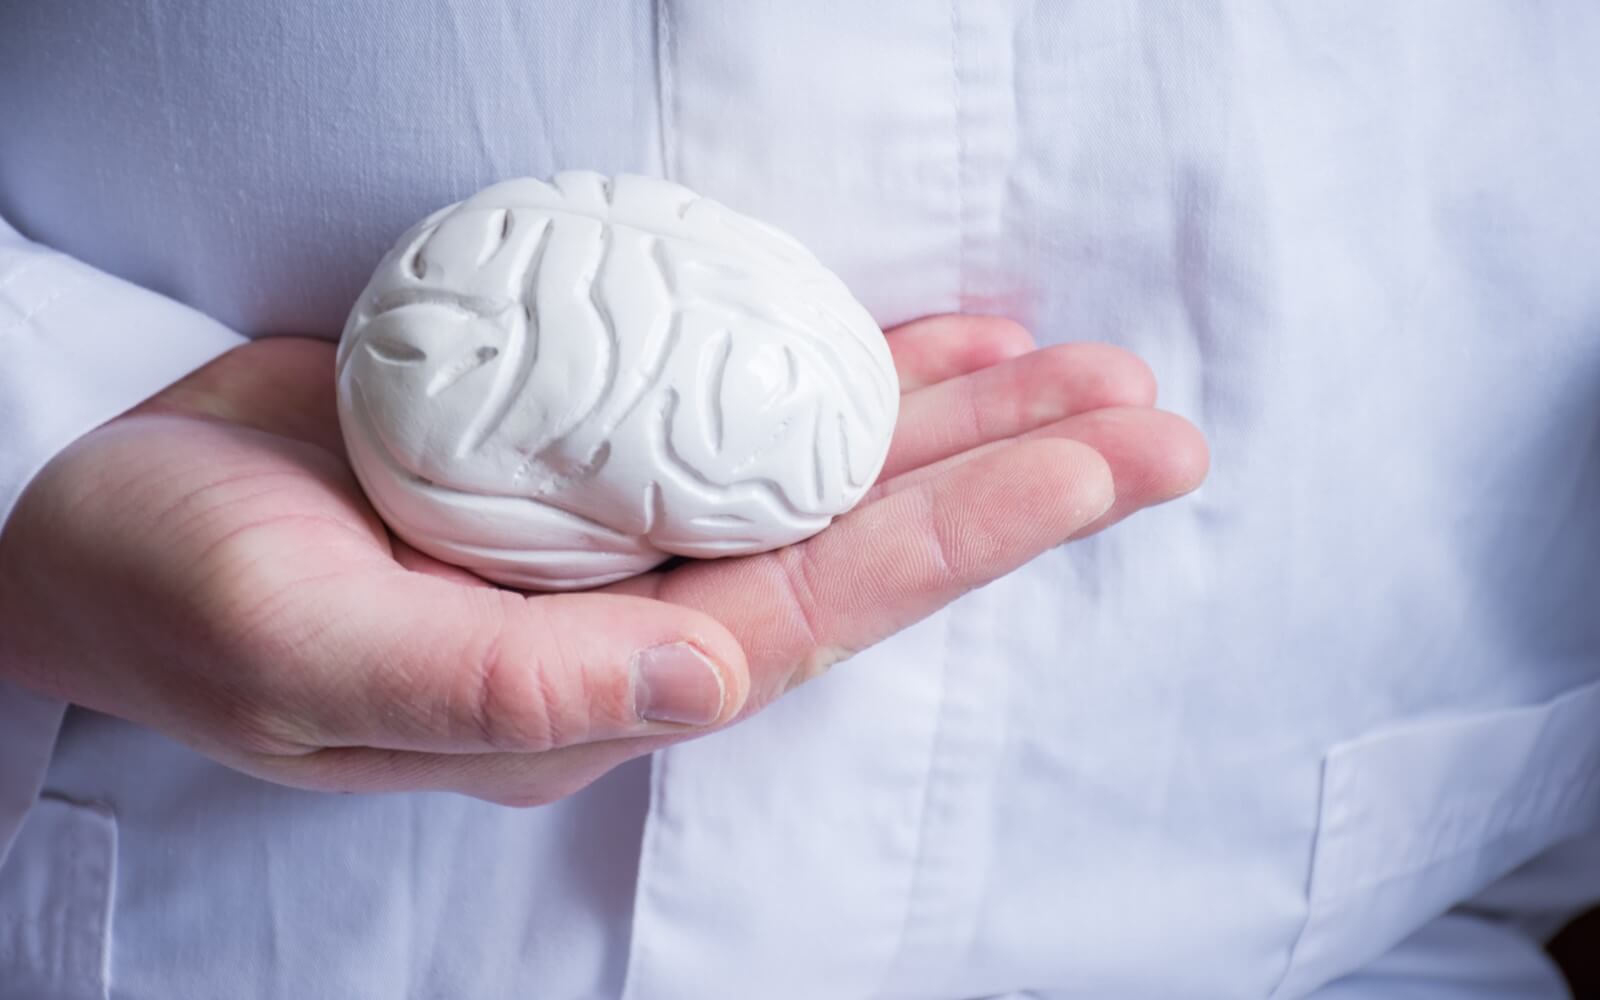 Arzt im weißen Kittel hält in seiner Hand in Hand anatomisches Modell des menschlichen Gehirns